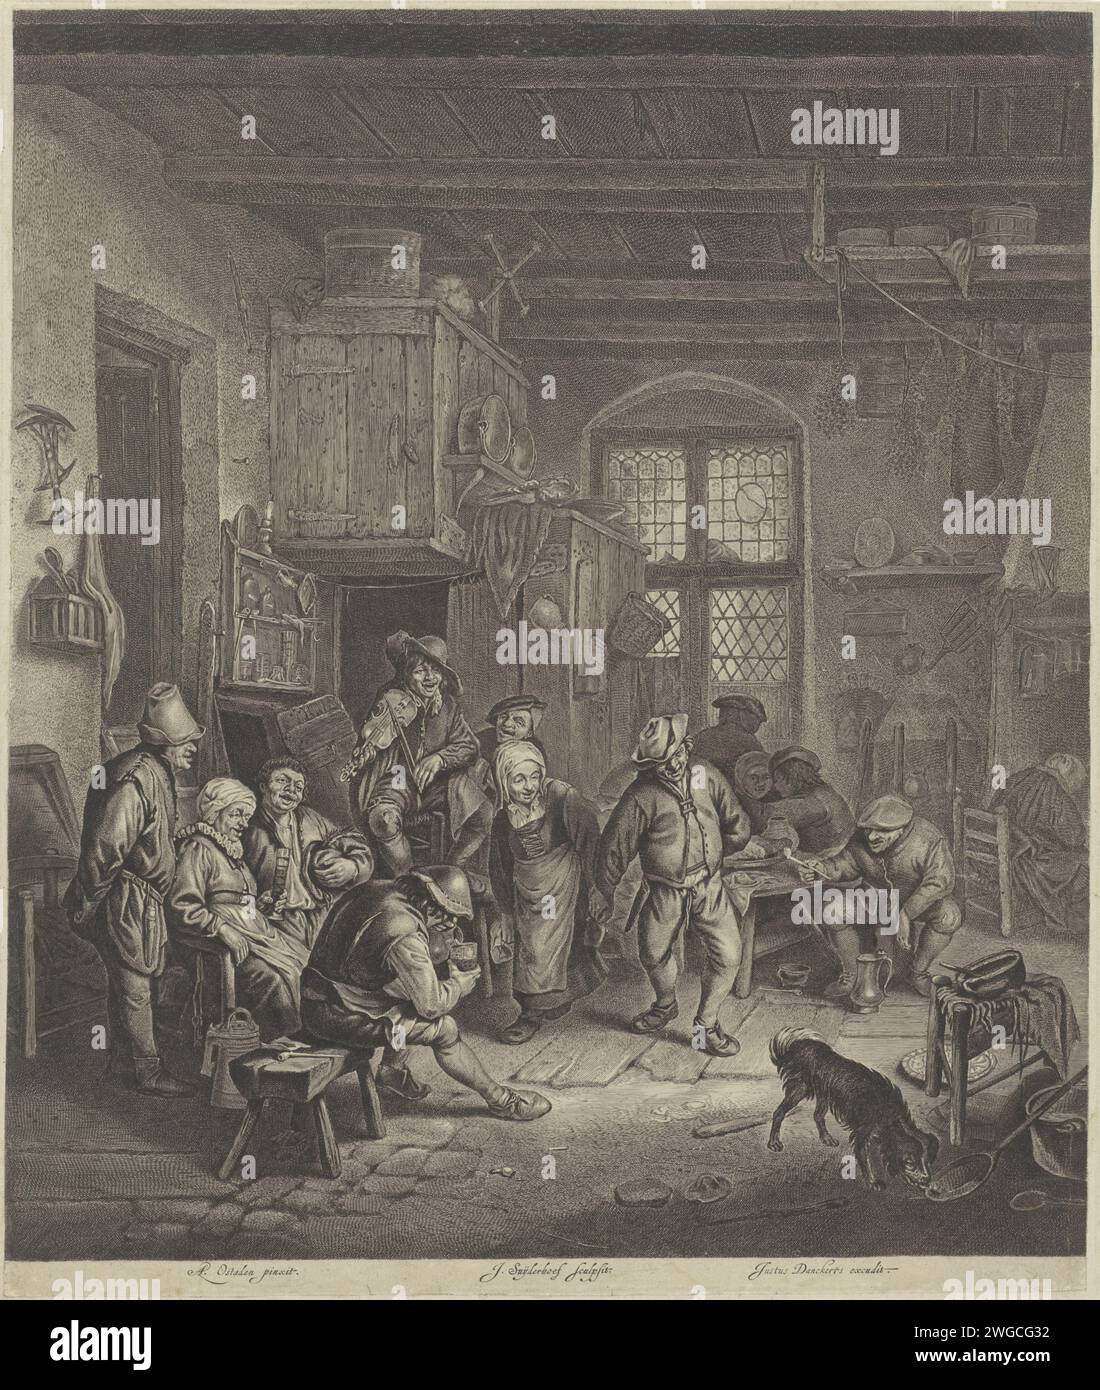 Bauerninnenraum mit tanzendem Paar, Jonas Suyderhoef, nach Adriaen van Ostade, 1655 - 1701 Druck in einer gaststätte, eine alte Frau und ein alter Mann machen Hand in Hand einen Tanz. Links davon ein Geigenspieler und singende und trinkende Menschen. Rechts sitzender Mann mit Pfeife in der Hand. Ein Hund rechts im Vordergrund. Amsterdamer Papier mit Gravur eines Tanzpaares; Mann und Frau tanzen als Paar. Violine, Geige. Stimmmusik, Gesang. gasthof, Kaffeehaus, Gasthaus usw. Stockfoto